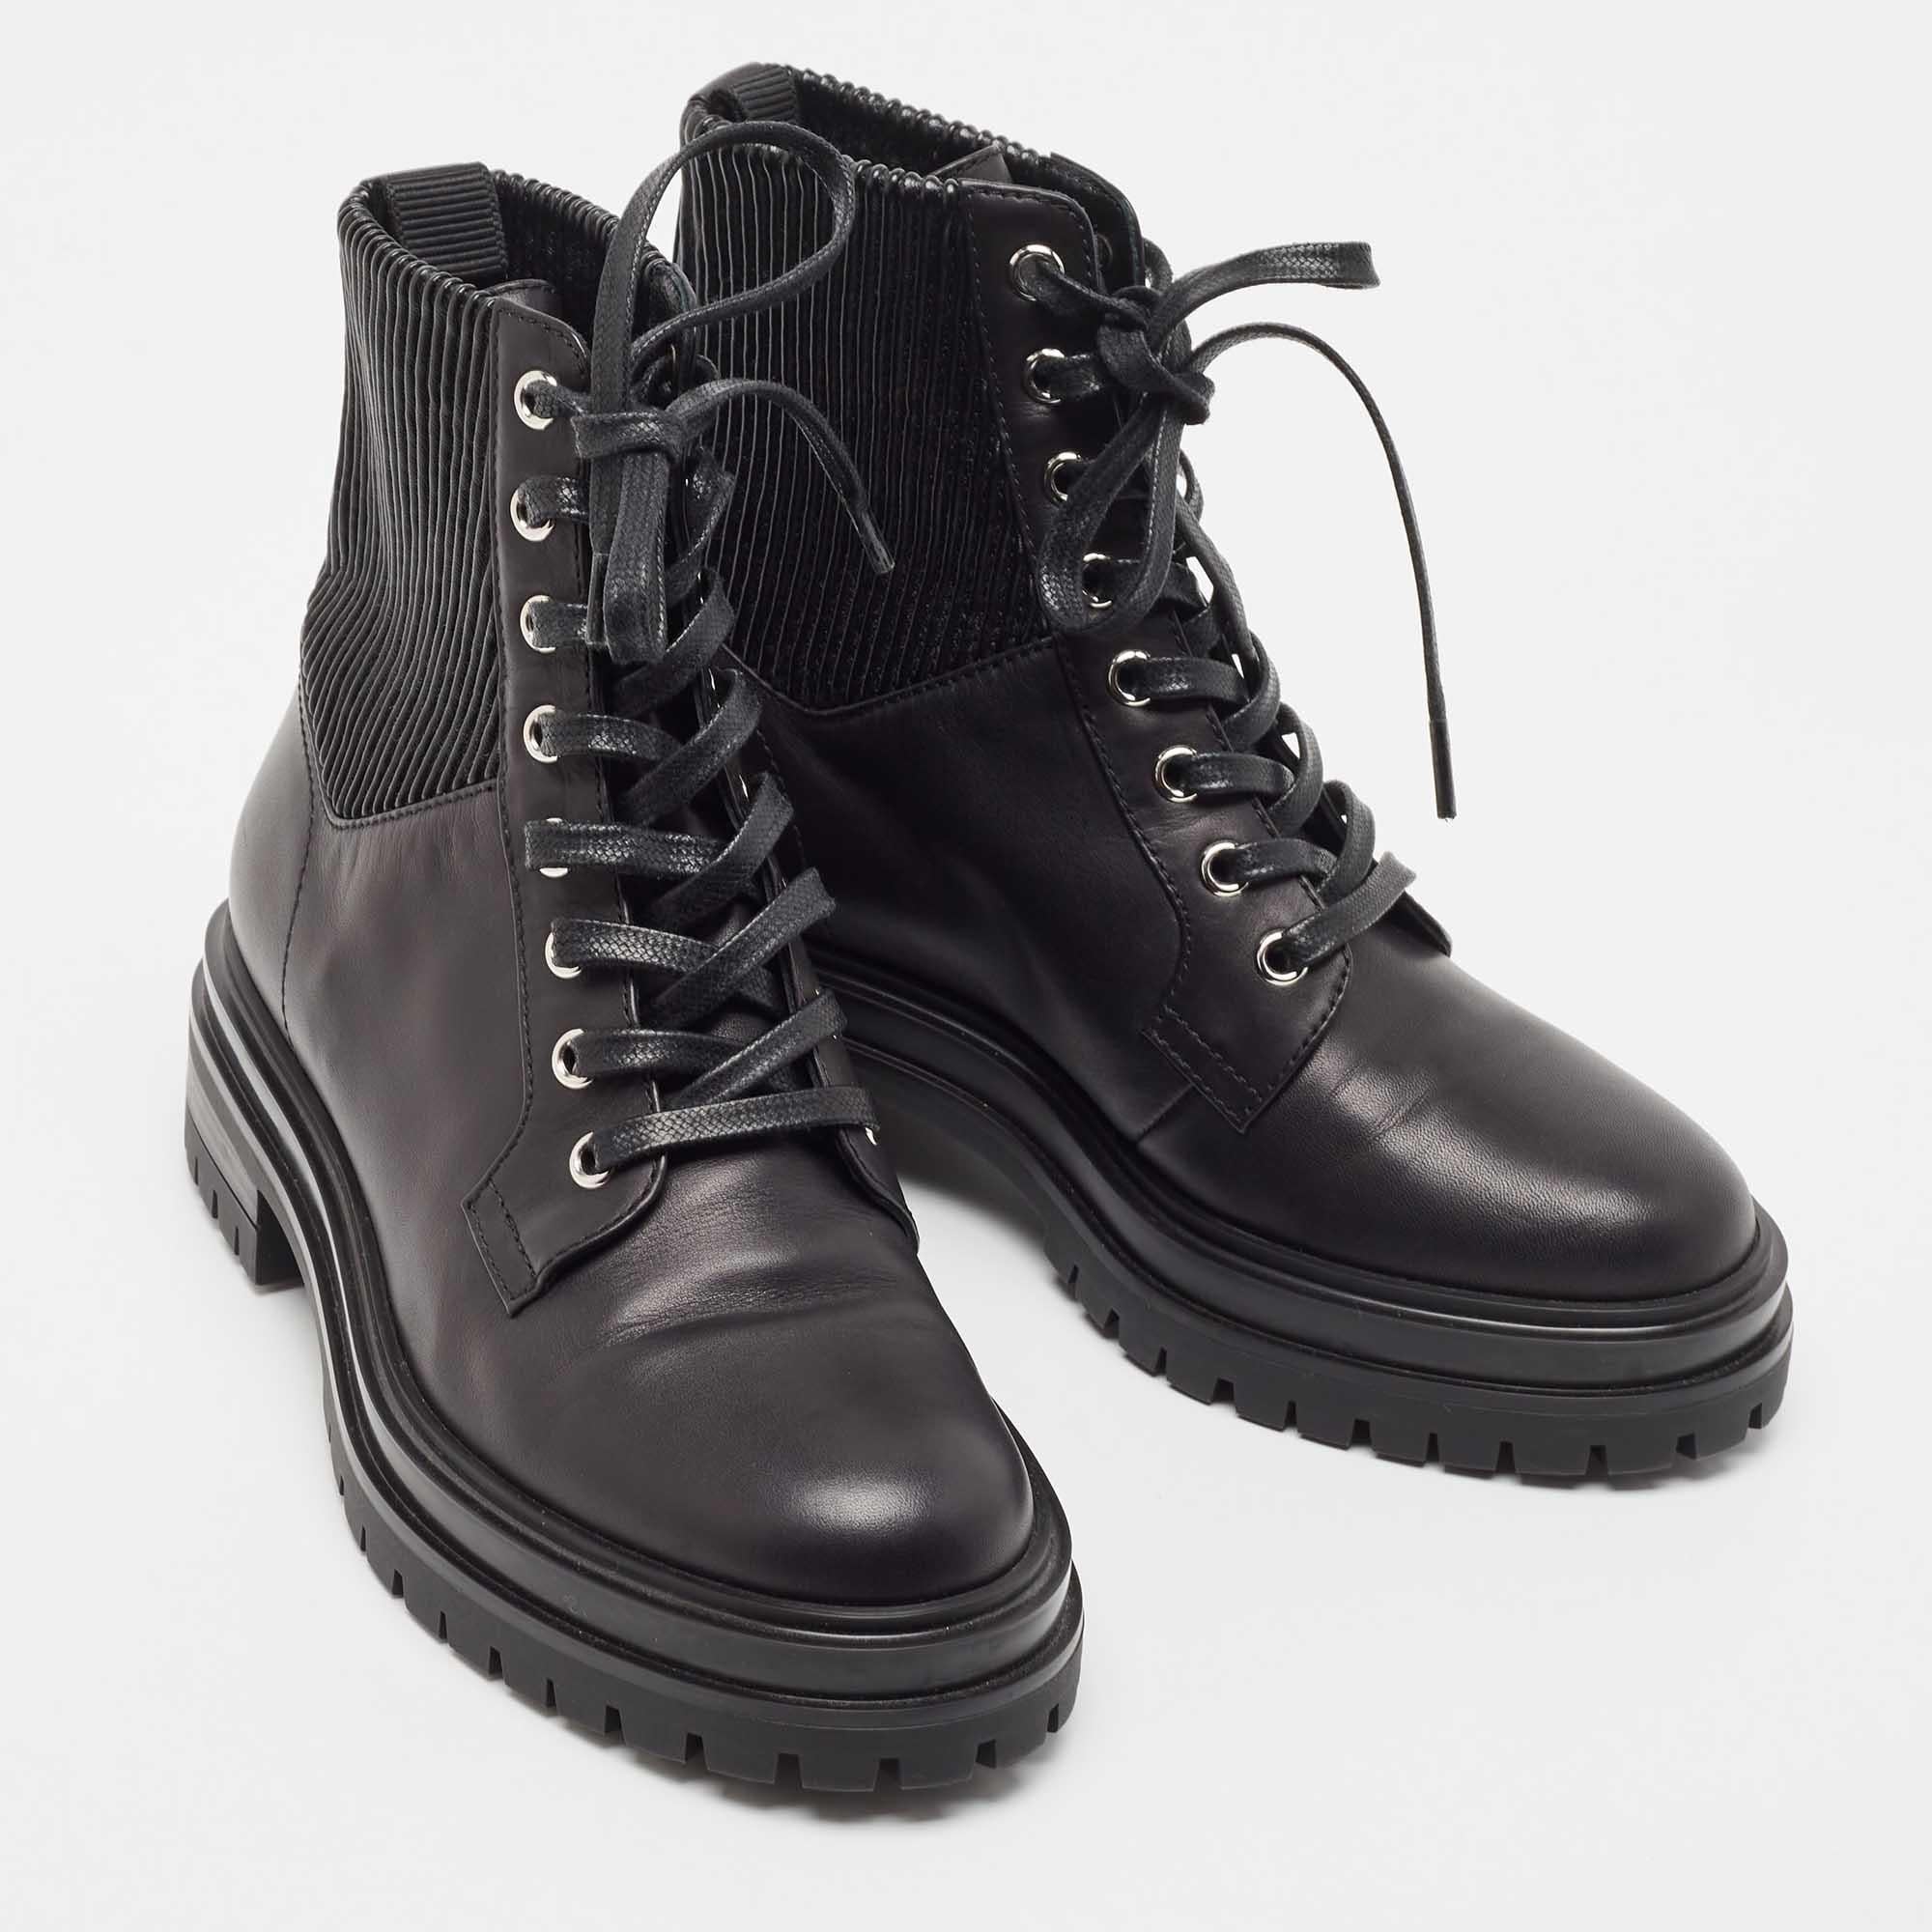 Gianvito Rossi Black Leather Combat Boots Size 35.5 In Good Condition For Sale In Dubai, Al Qouz 2